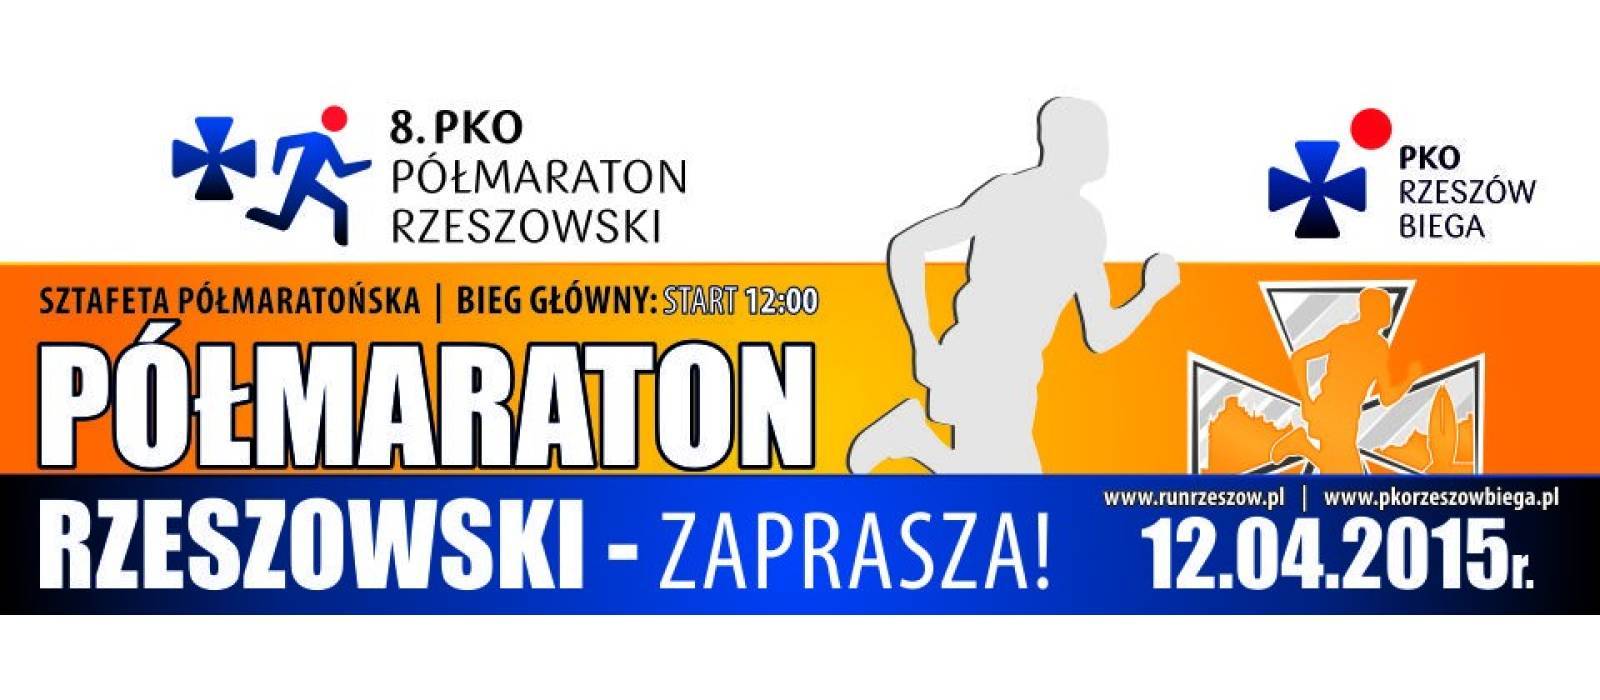 8 PKO Maraton Rzeszowski - 1